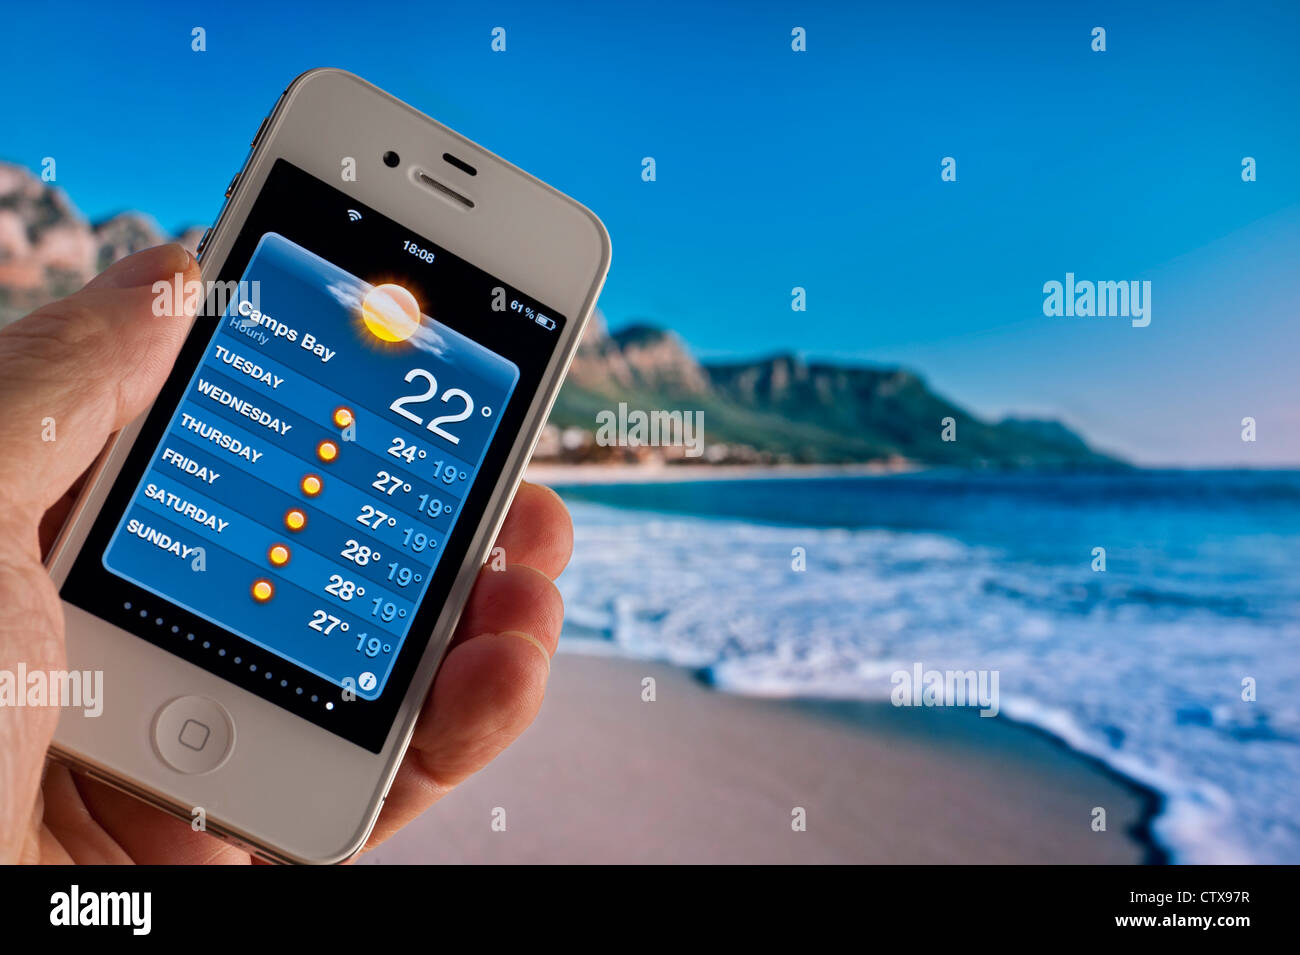 Apple iPhone 4s mostra 22C mattina sole sulle previsioni del tempo Applicazione presso Camps Bay Capetown Sud Africa Foto Stock